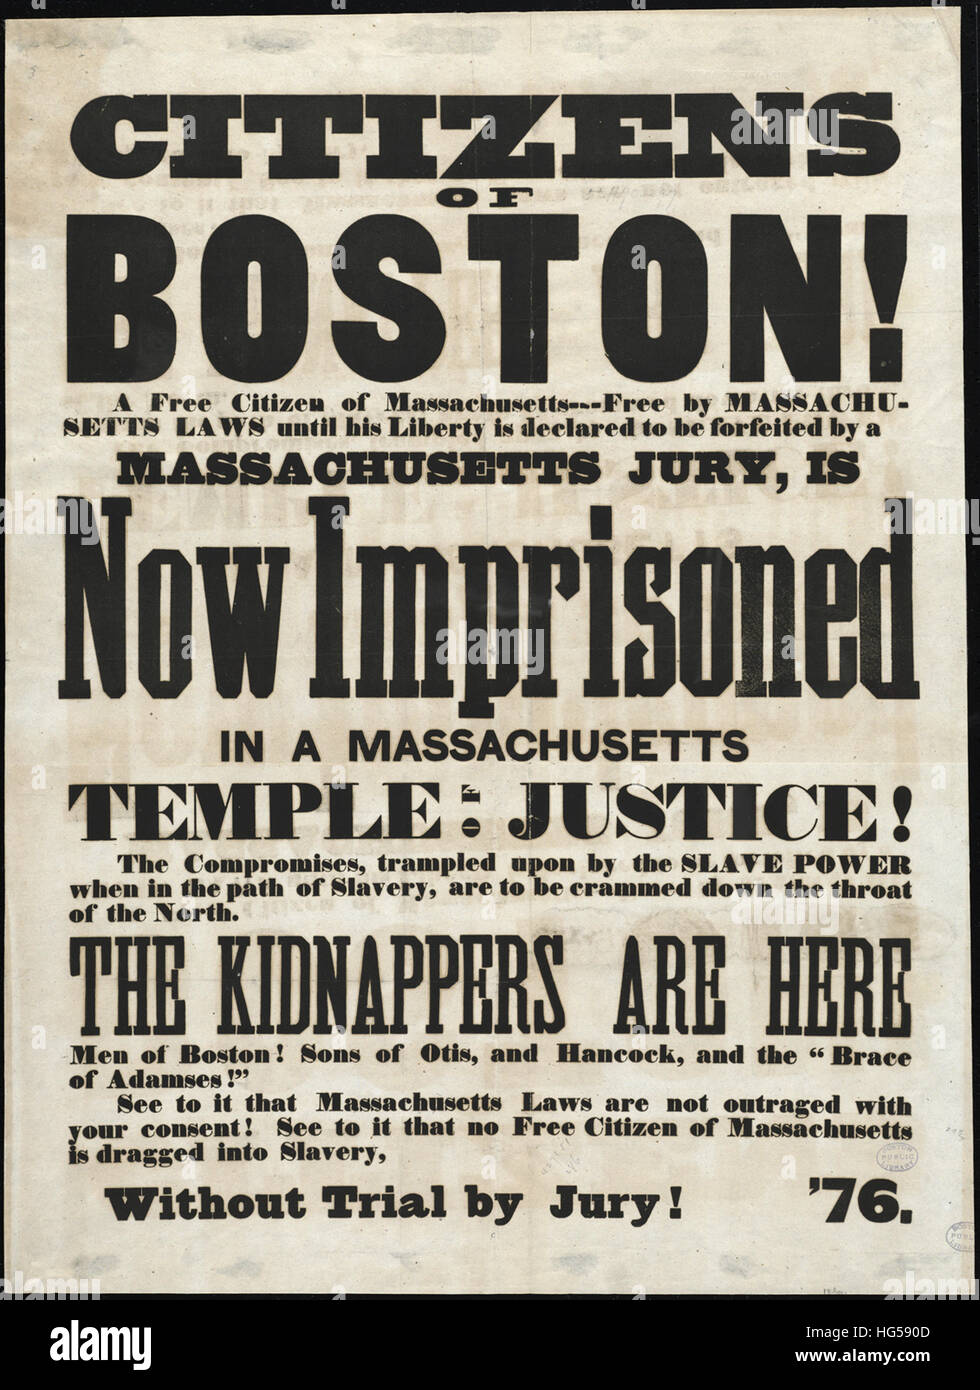 Anti-Slavery costados: Circa 1850 - ciudadanos de Boston! Foto de stock